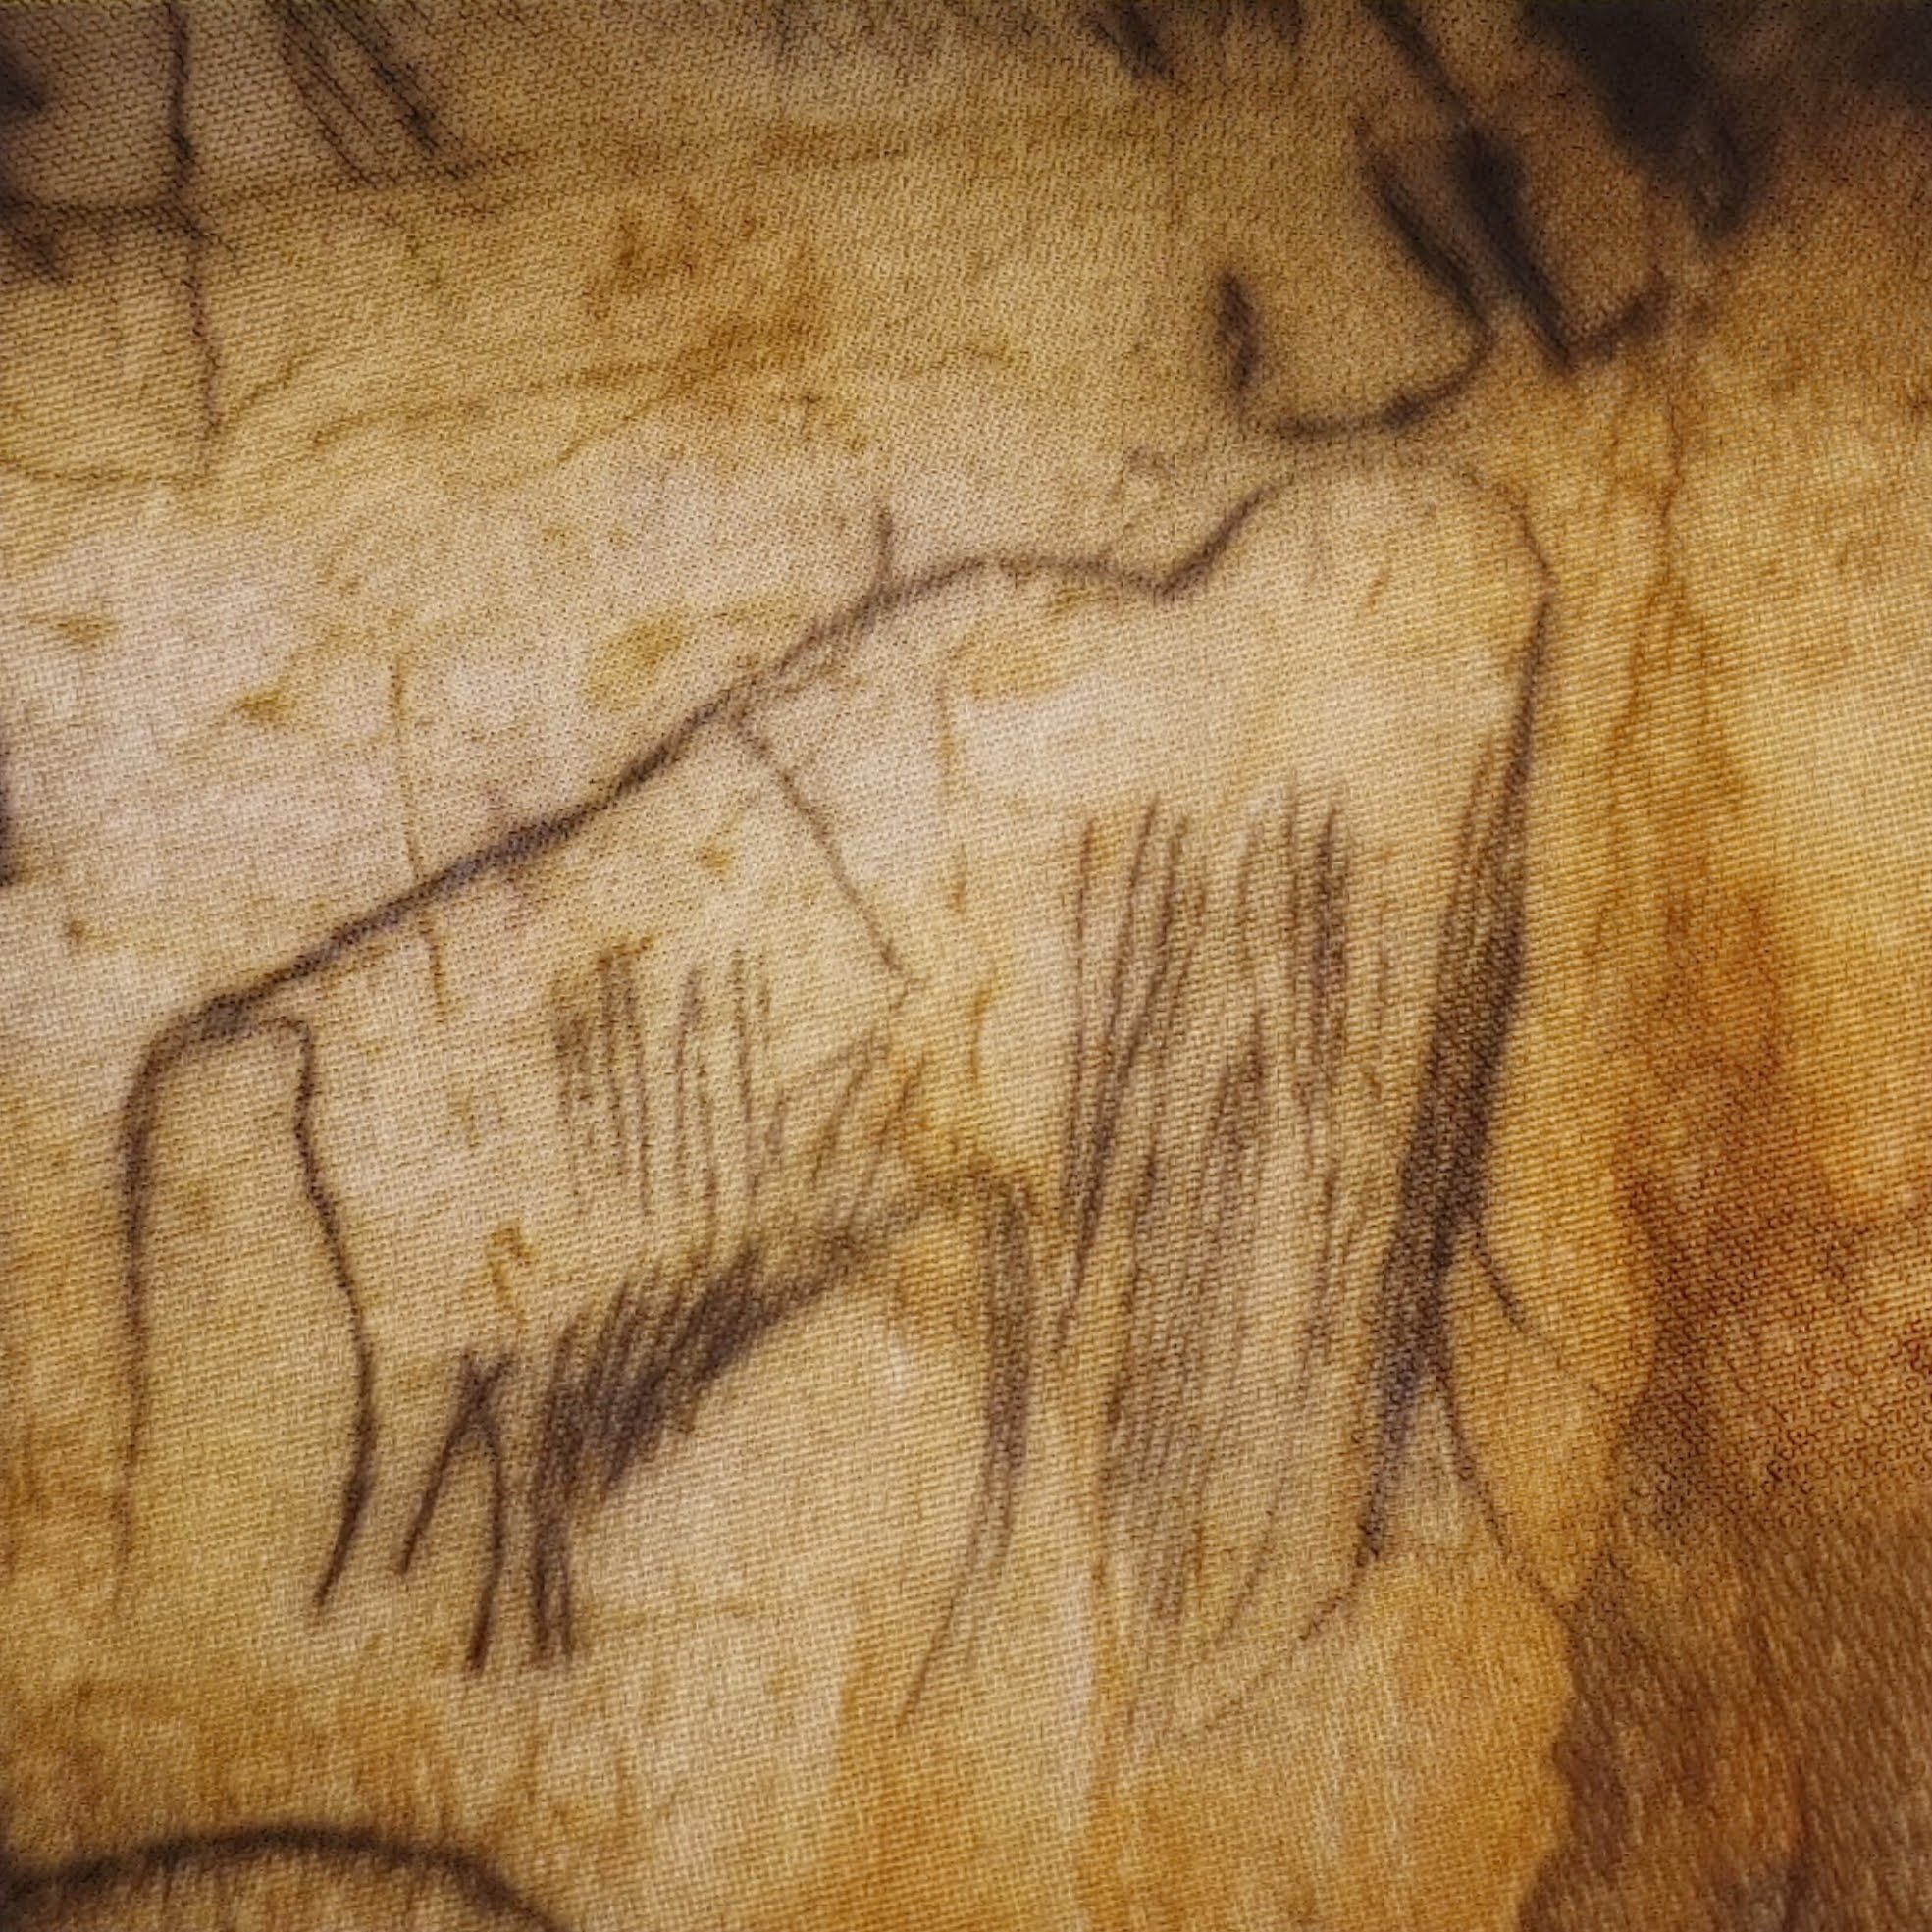 ציורי קיר של ממוטות ובעלי חיים שצויירו ע''י האדם הקדמון לפני עשרות שנים במערת פש-מורל